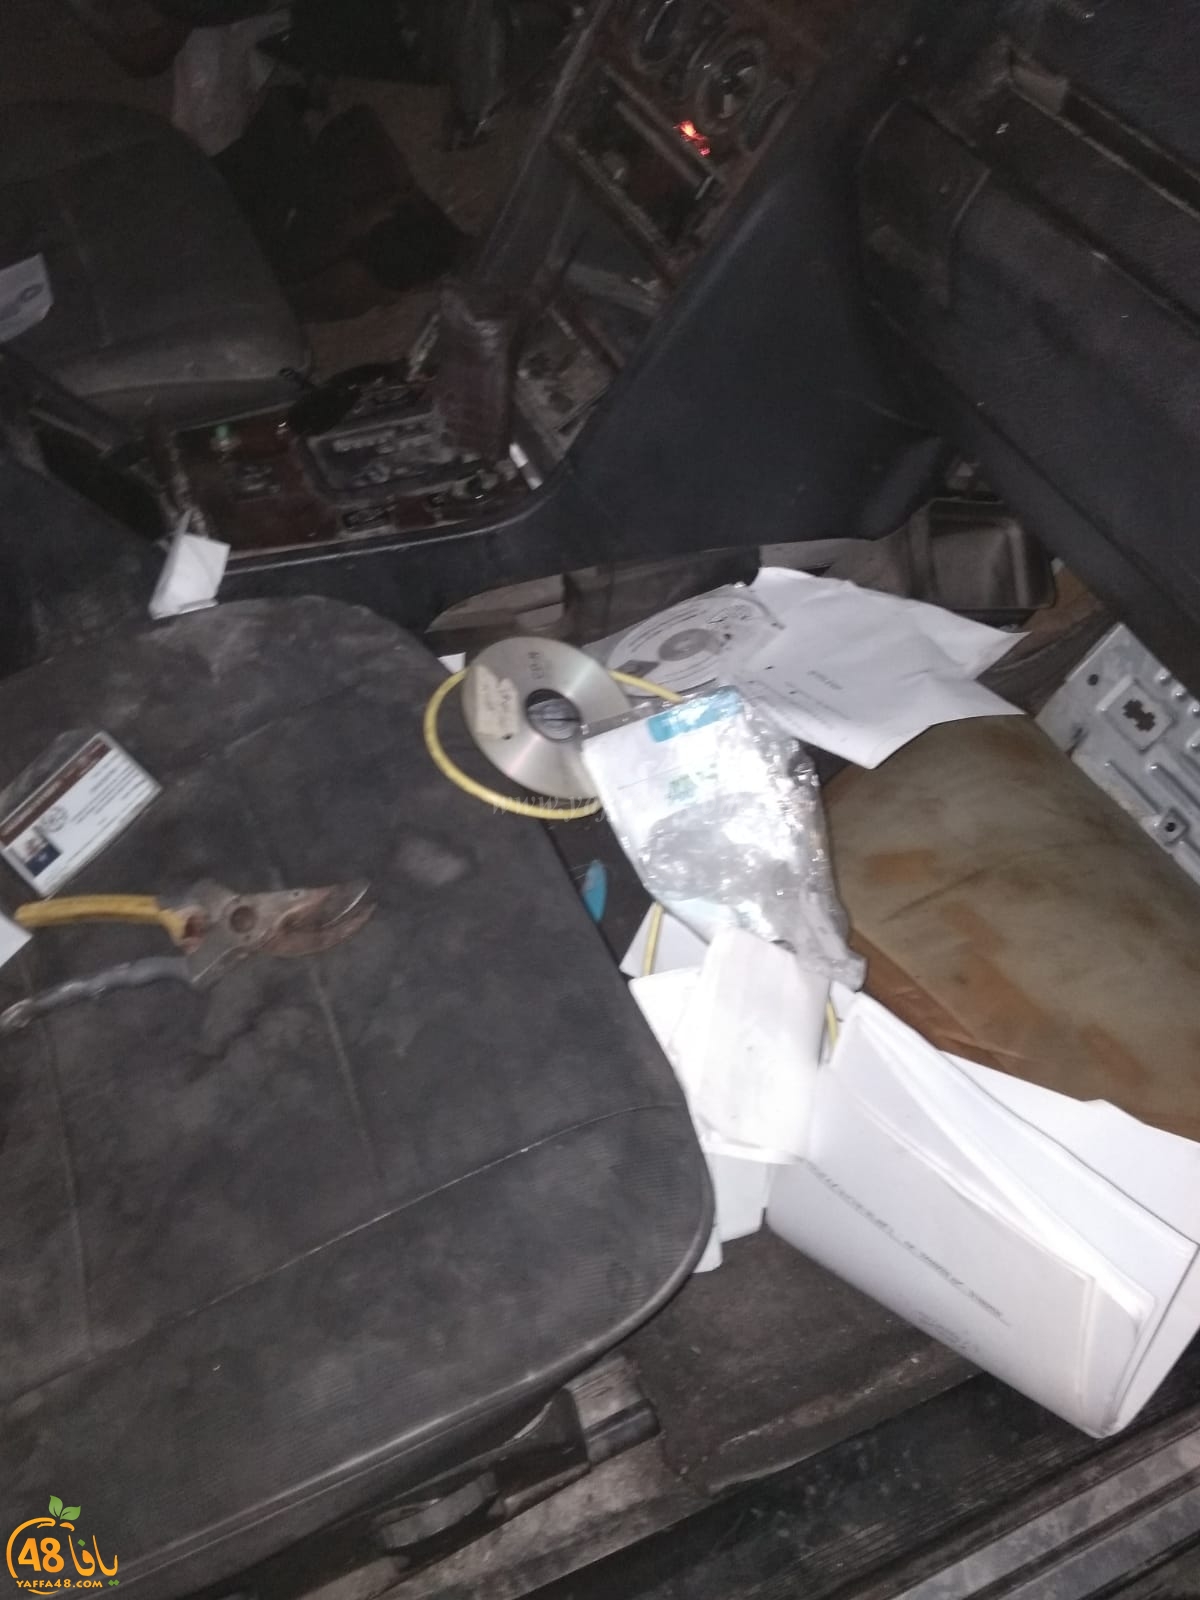  بالصور: الشرطة تُعيث فساداً في سيارة أحد المواطنين بيافا بحجة البحث عن ممنوعات